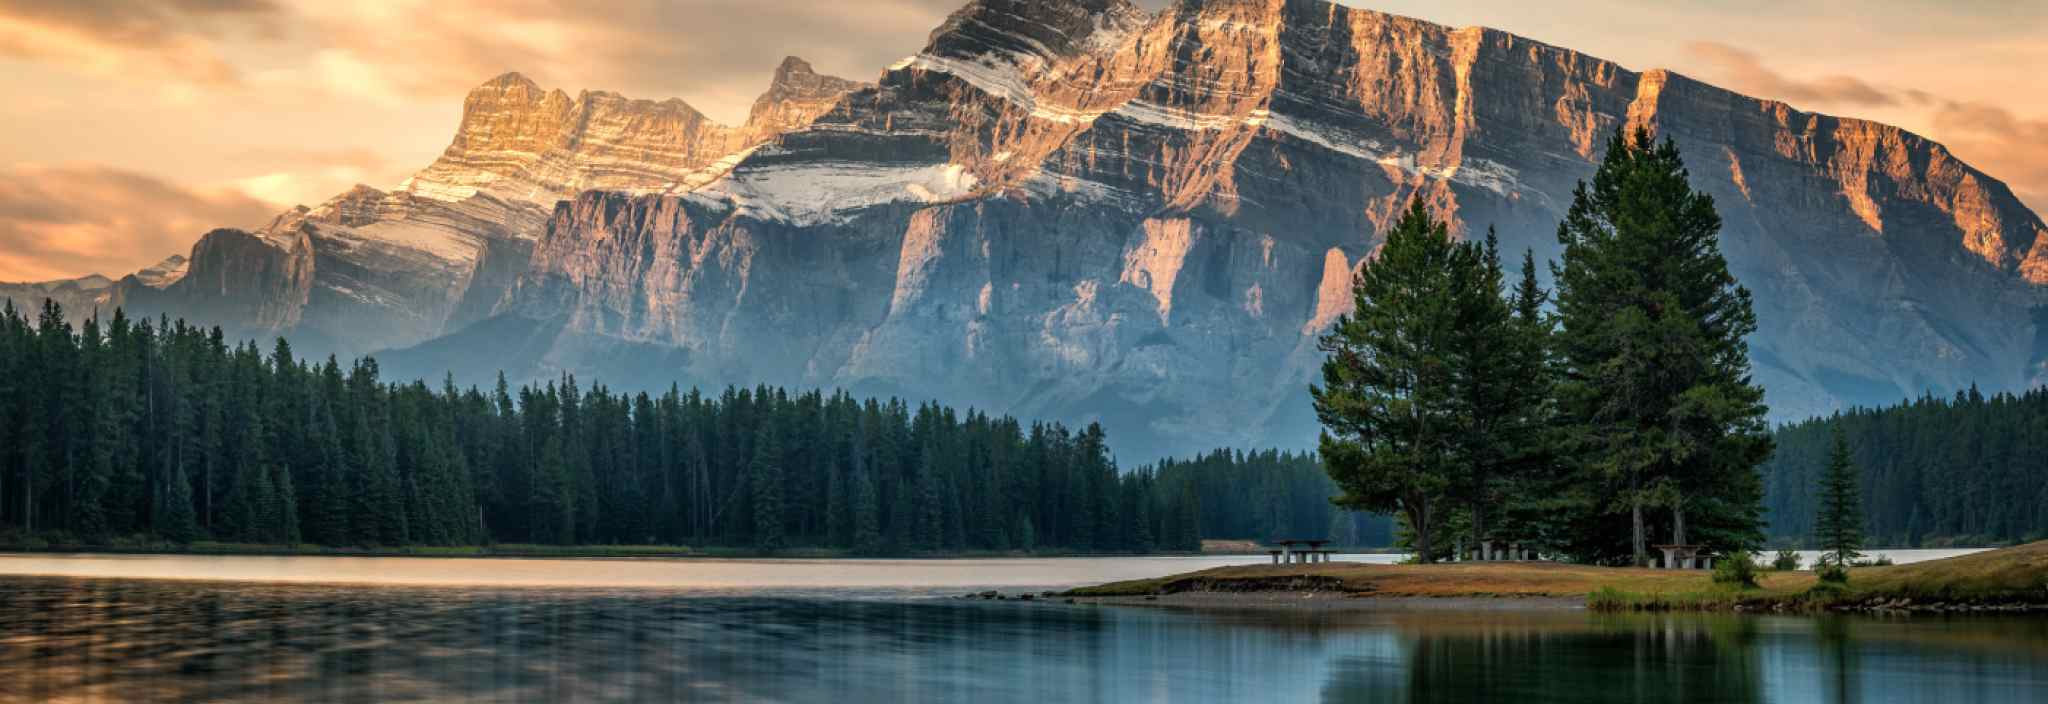 Un lac paisible entouré d’une forêt qui se situe au pied d’une montagne rocheuse et qui est baigné dans la lumière dorée d’un coucher de soleil.